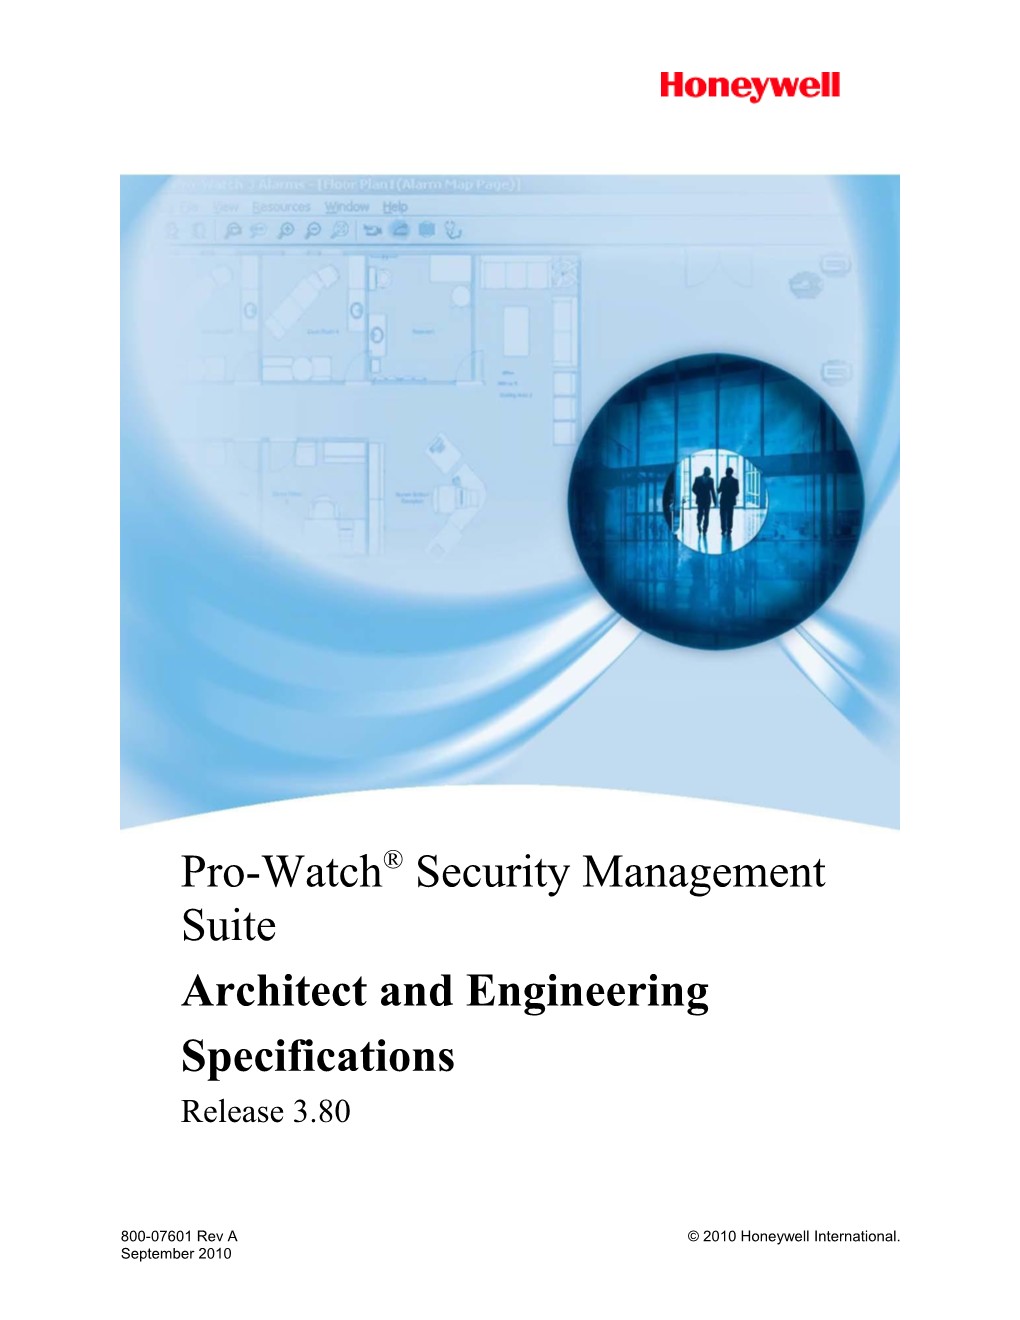 Pro-Watch Security Management Suite